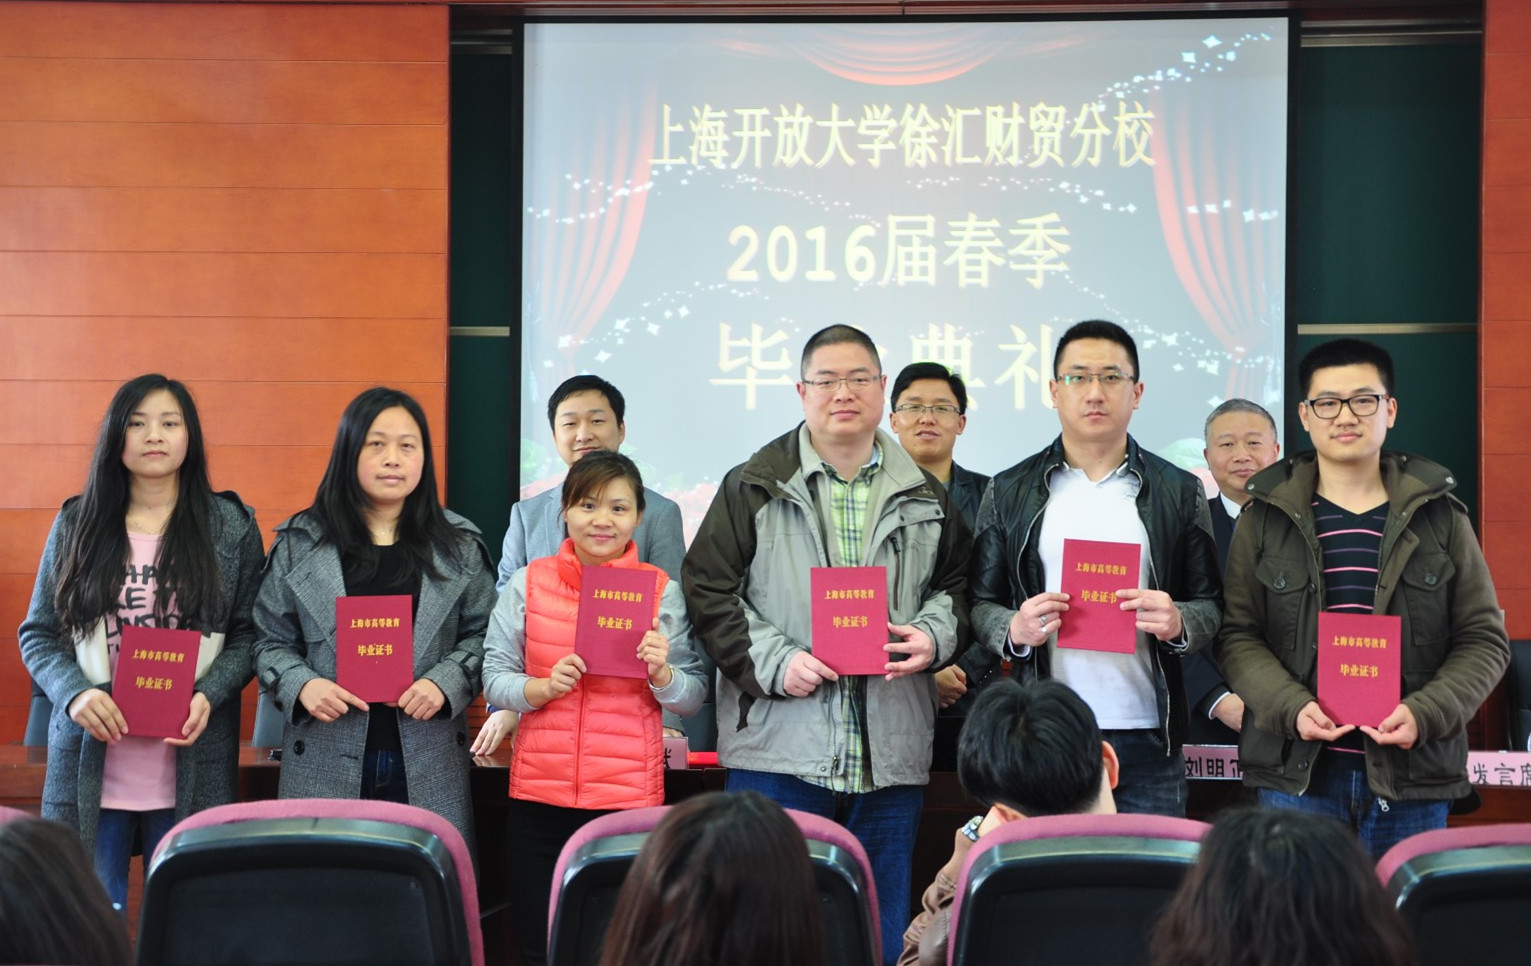 上海开大徐汇财贸分校举行16届（春）专科毕业典礼